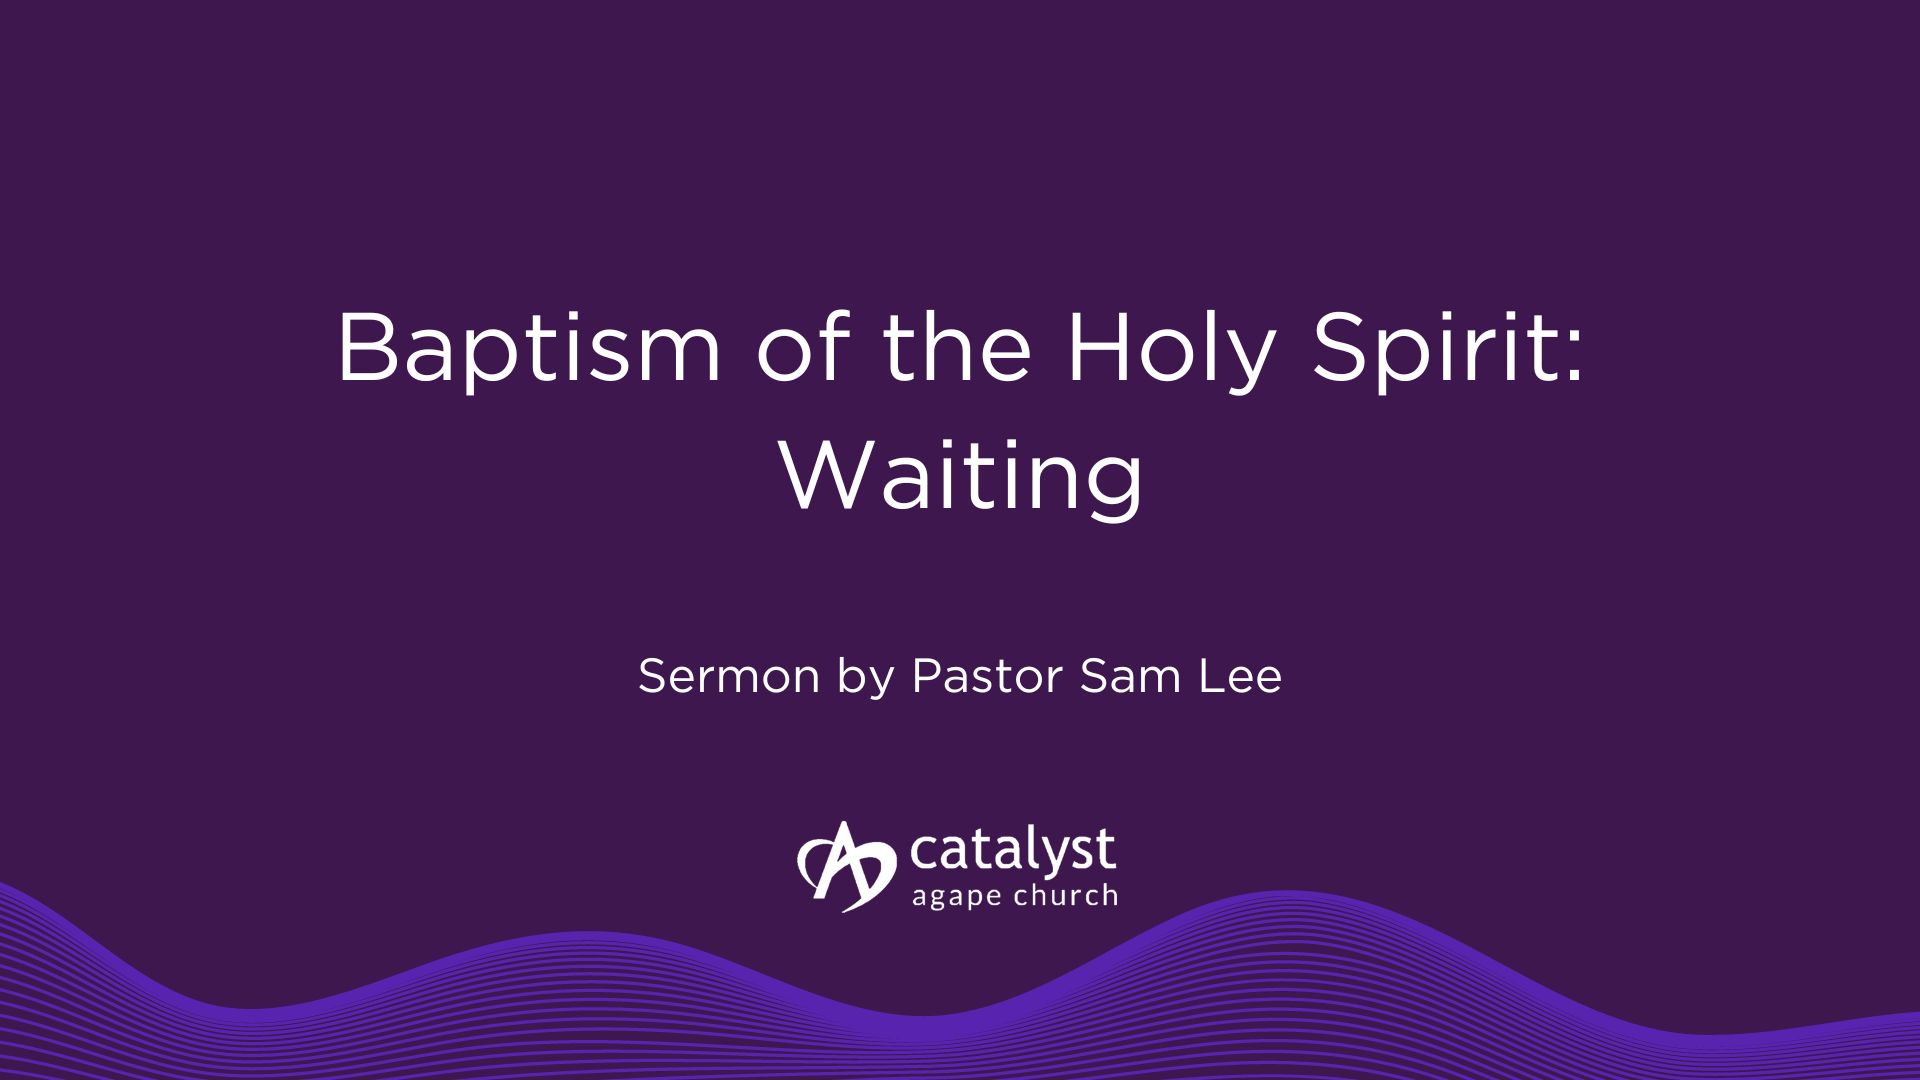 Baptism of the Holy Spirit: Waiting